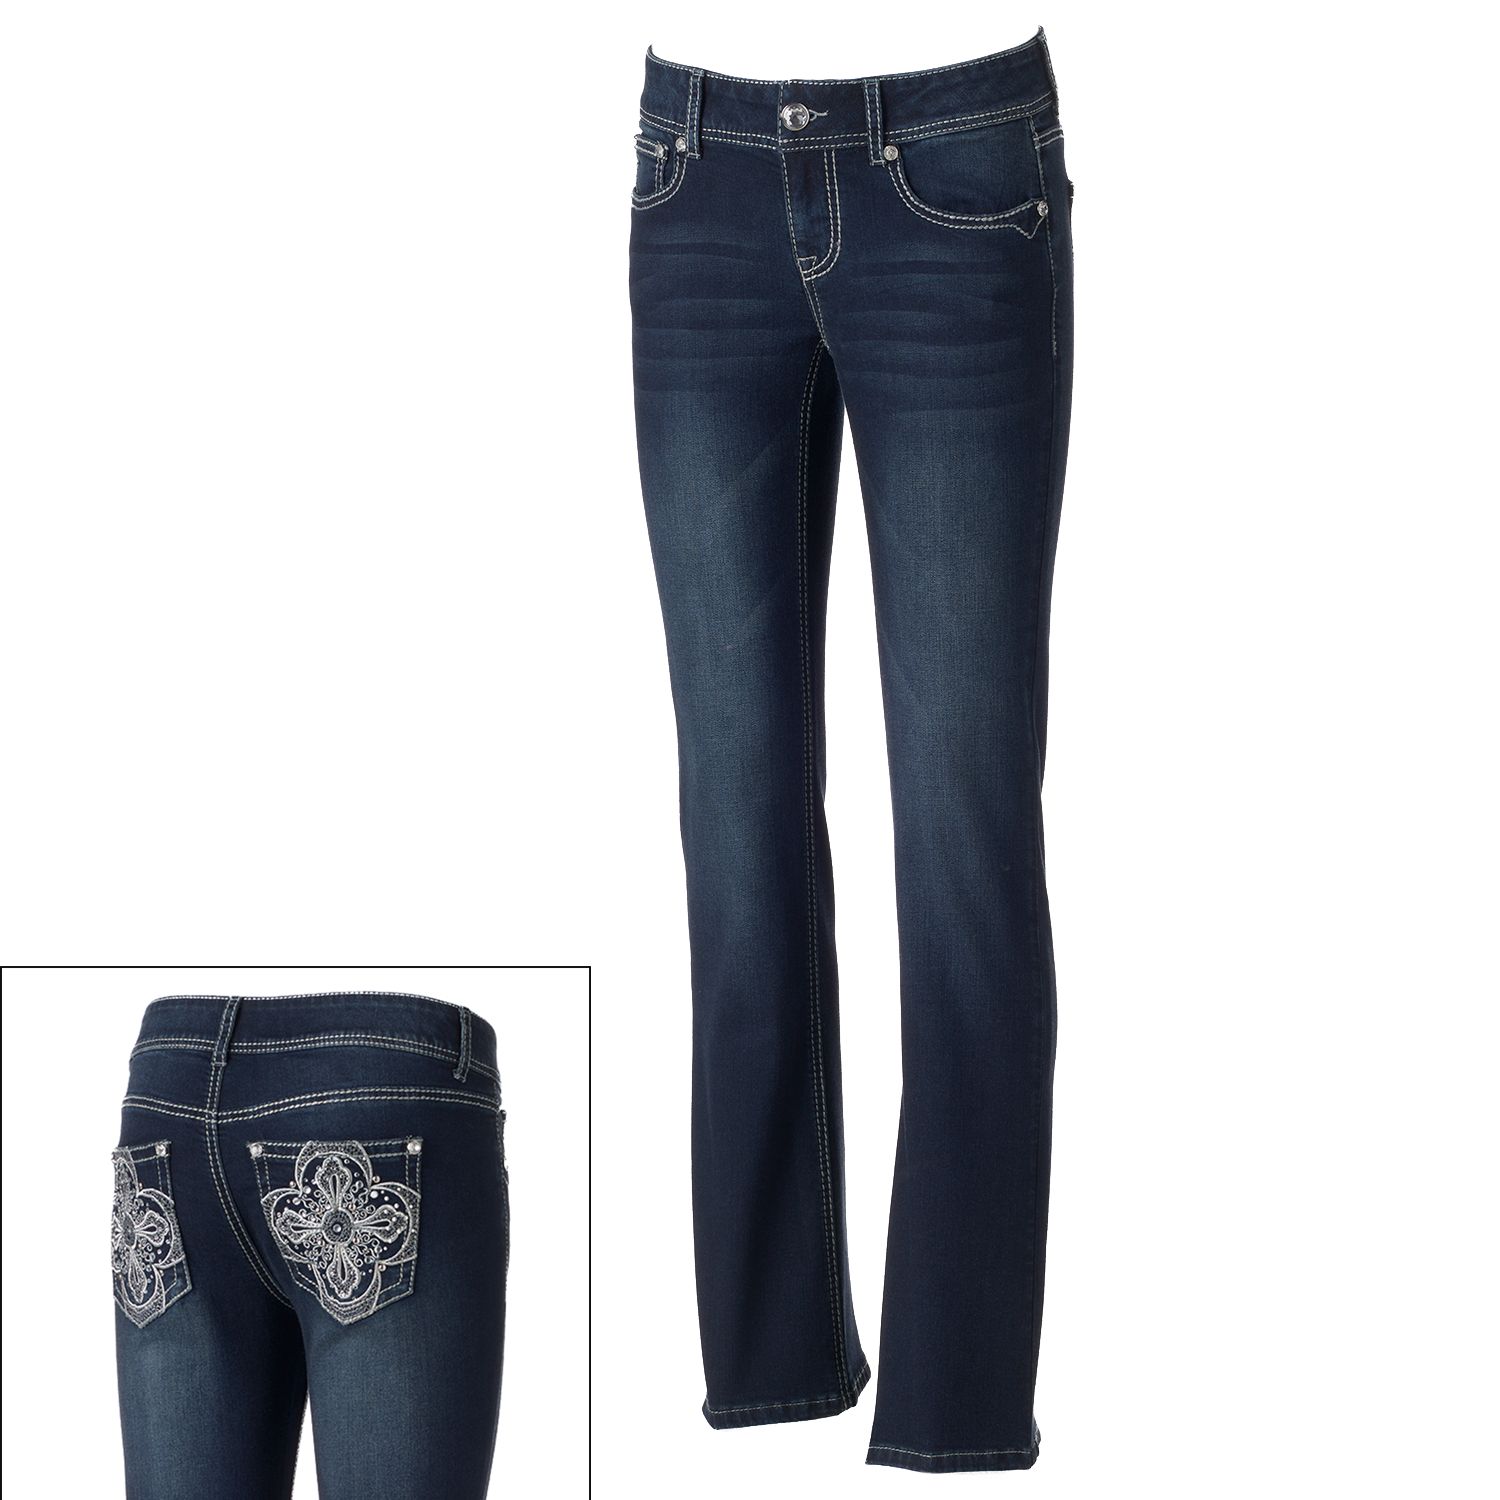 apt 9 embellished jeans